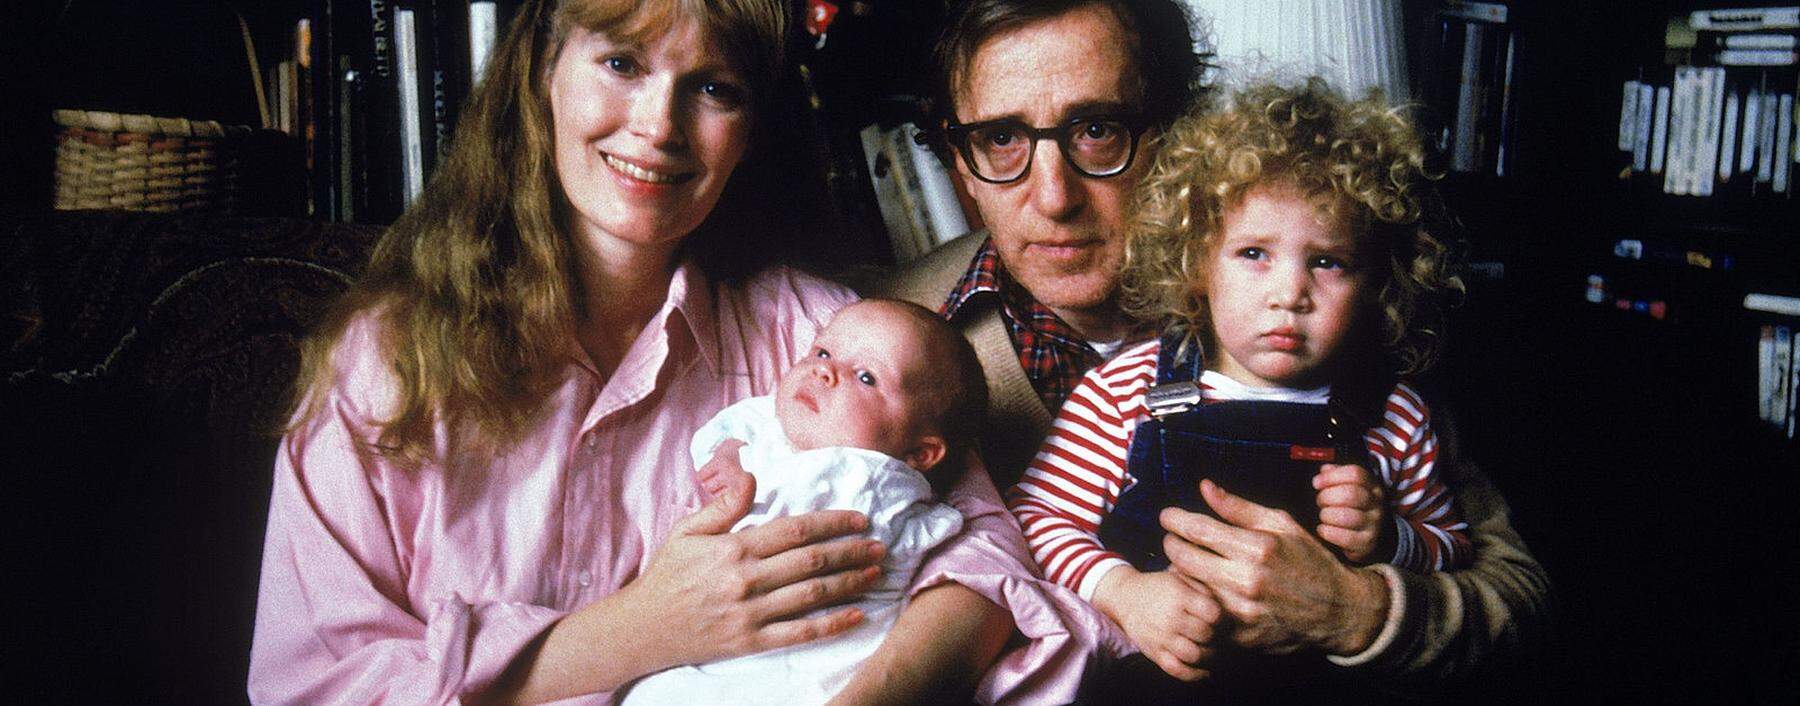 Vier Jahre vor Ausbruch des Familienkriegs: Woody Allen mit seiner damaligen Partnerin Mia Farrow und den Kindern Satchel und Dylan (links).